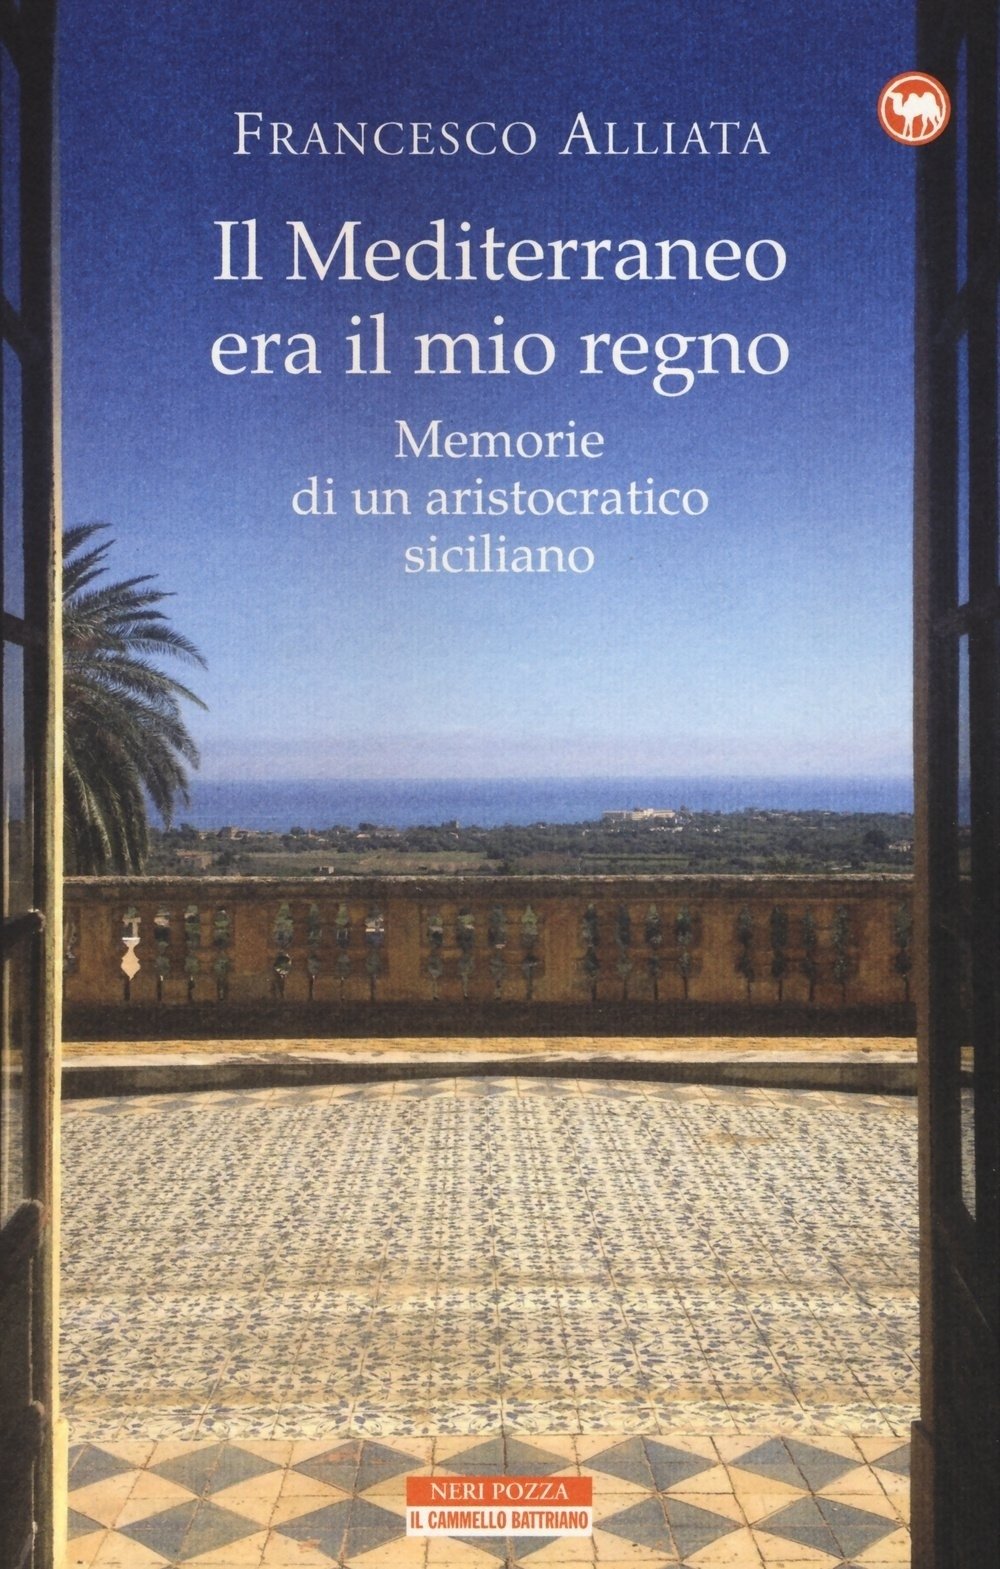 Francesco Alliata Il Mediterraneo era il mio regno. Memorie di un aristocratico siciliano (Neri Pozza, Vicenza 2015)